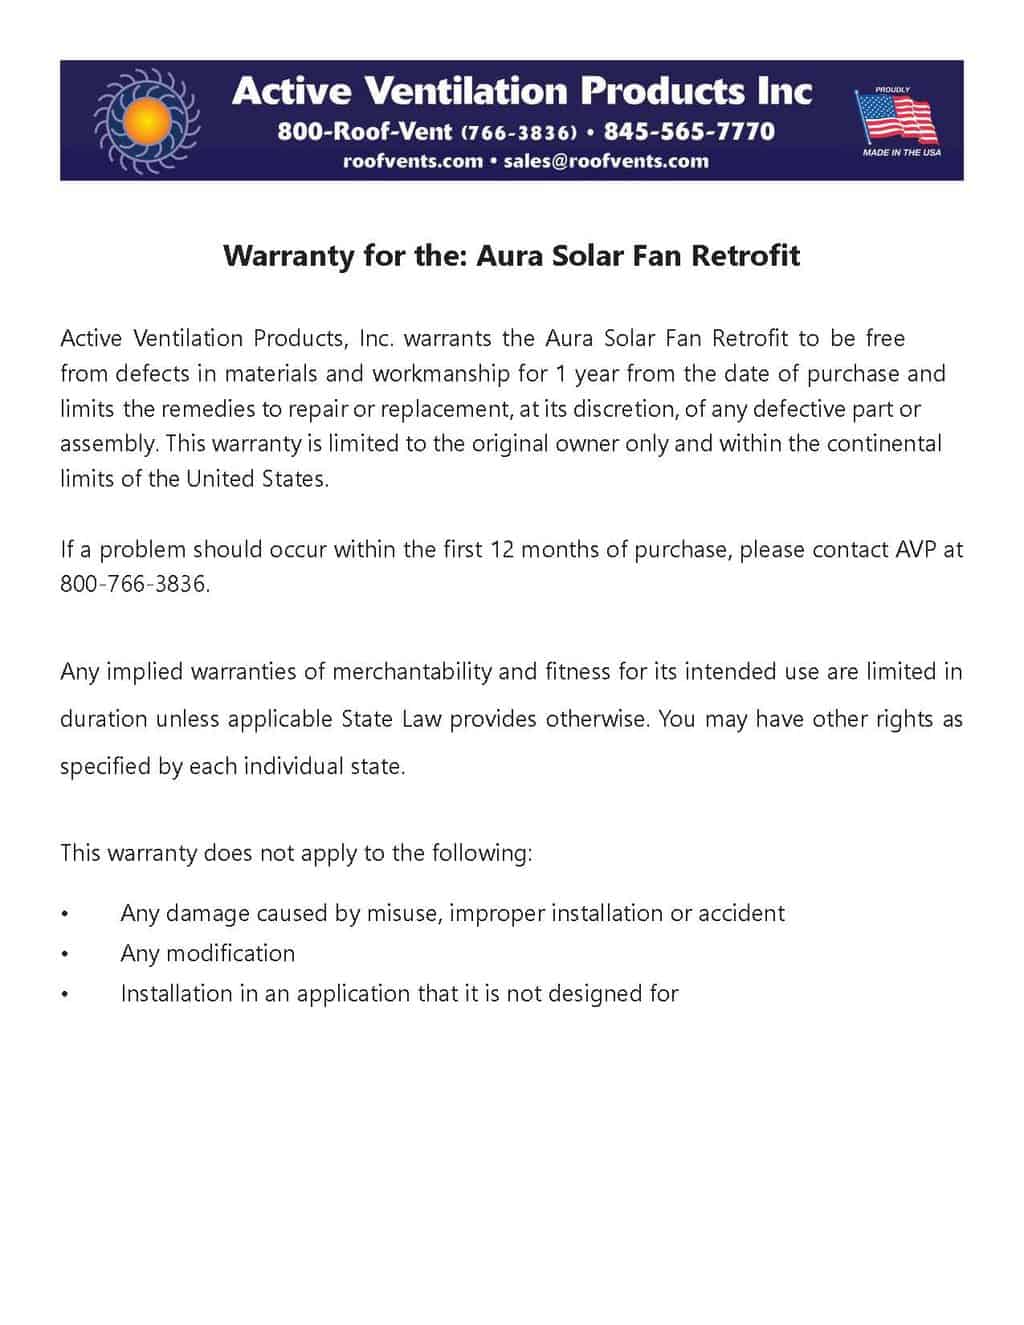 Warranty for the Aura Solar Fan Retrofit - Warranties